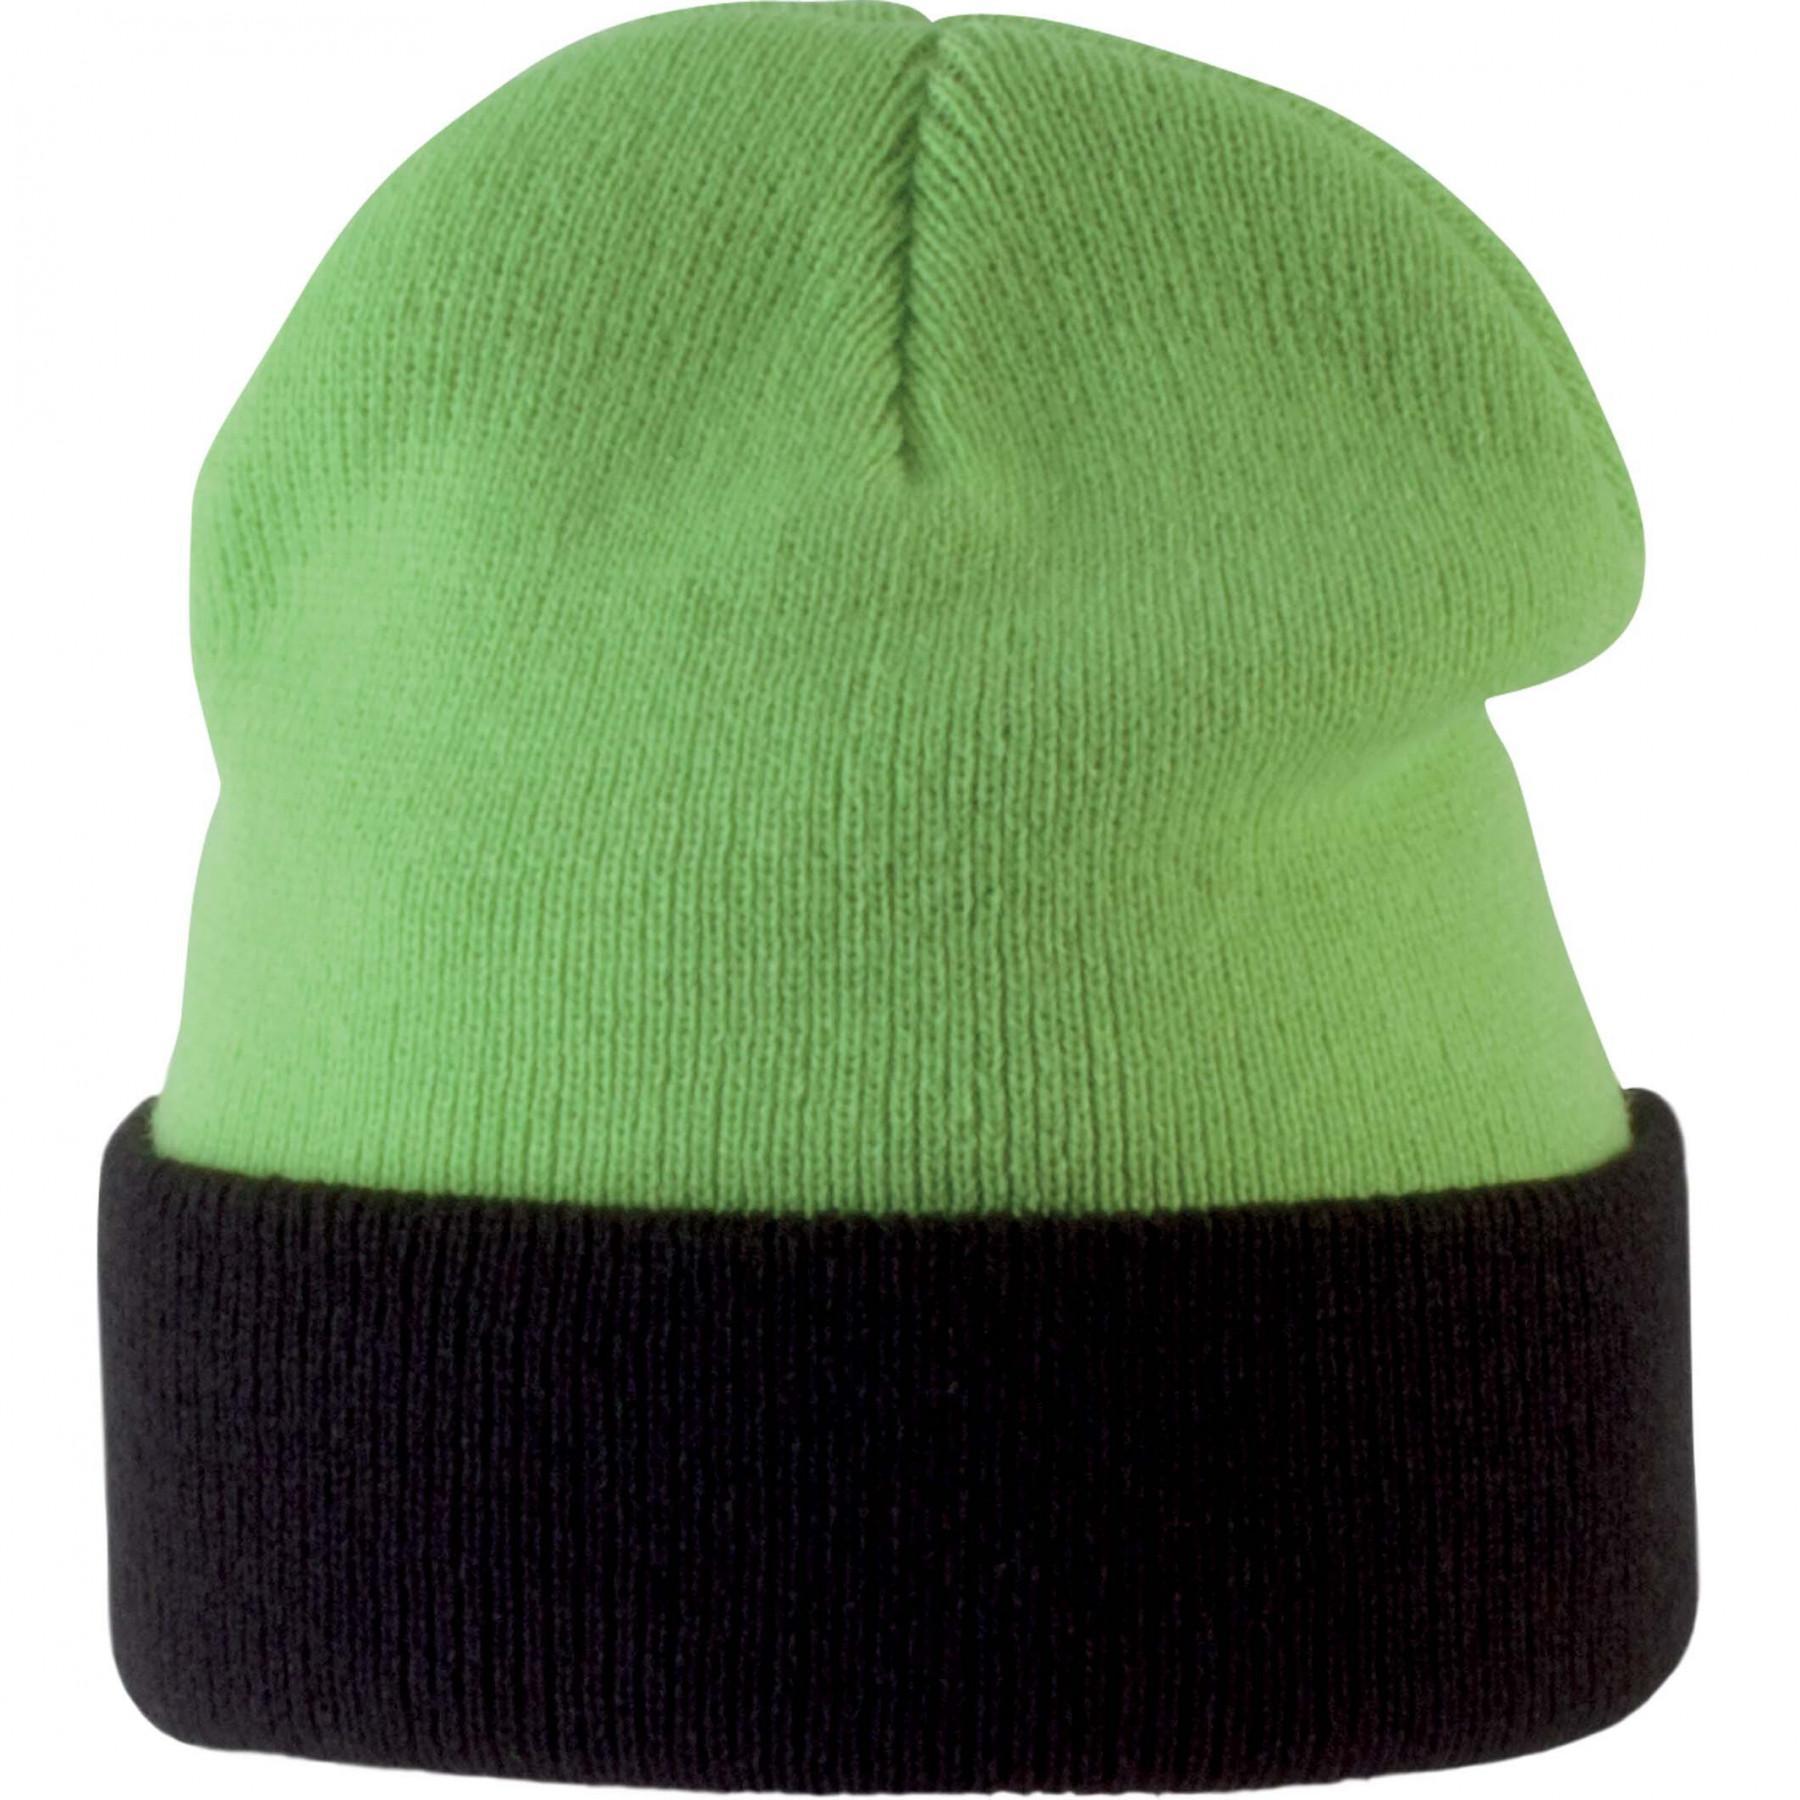 Children's hat K-up bicolore revers